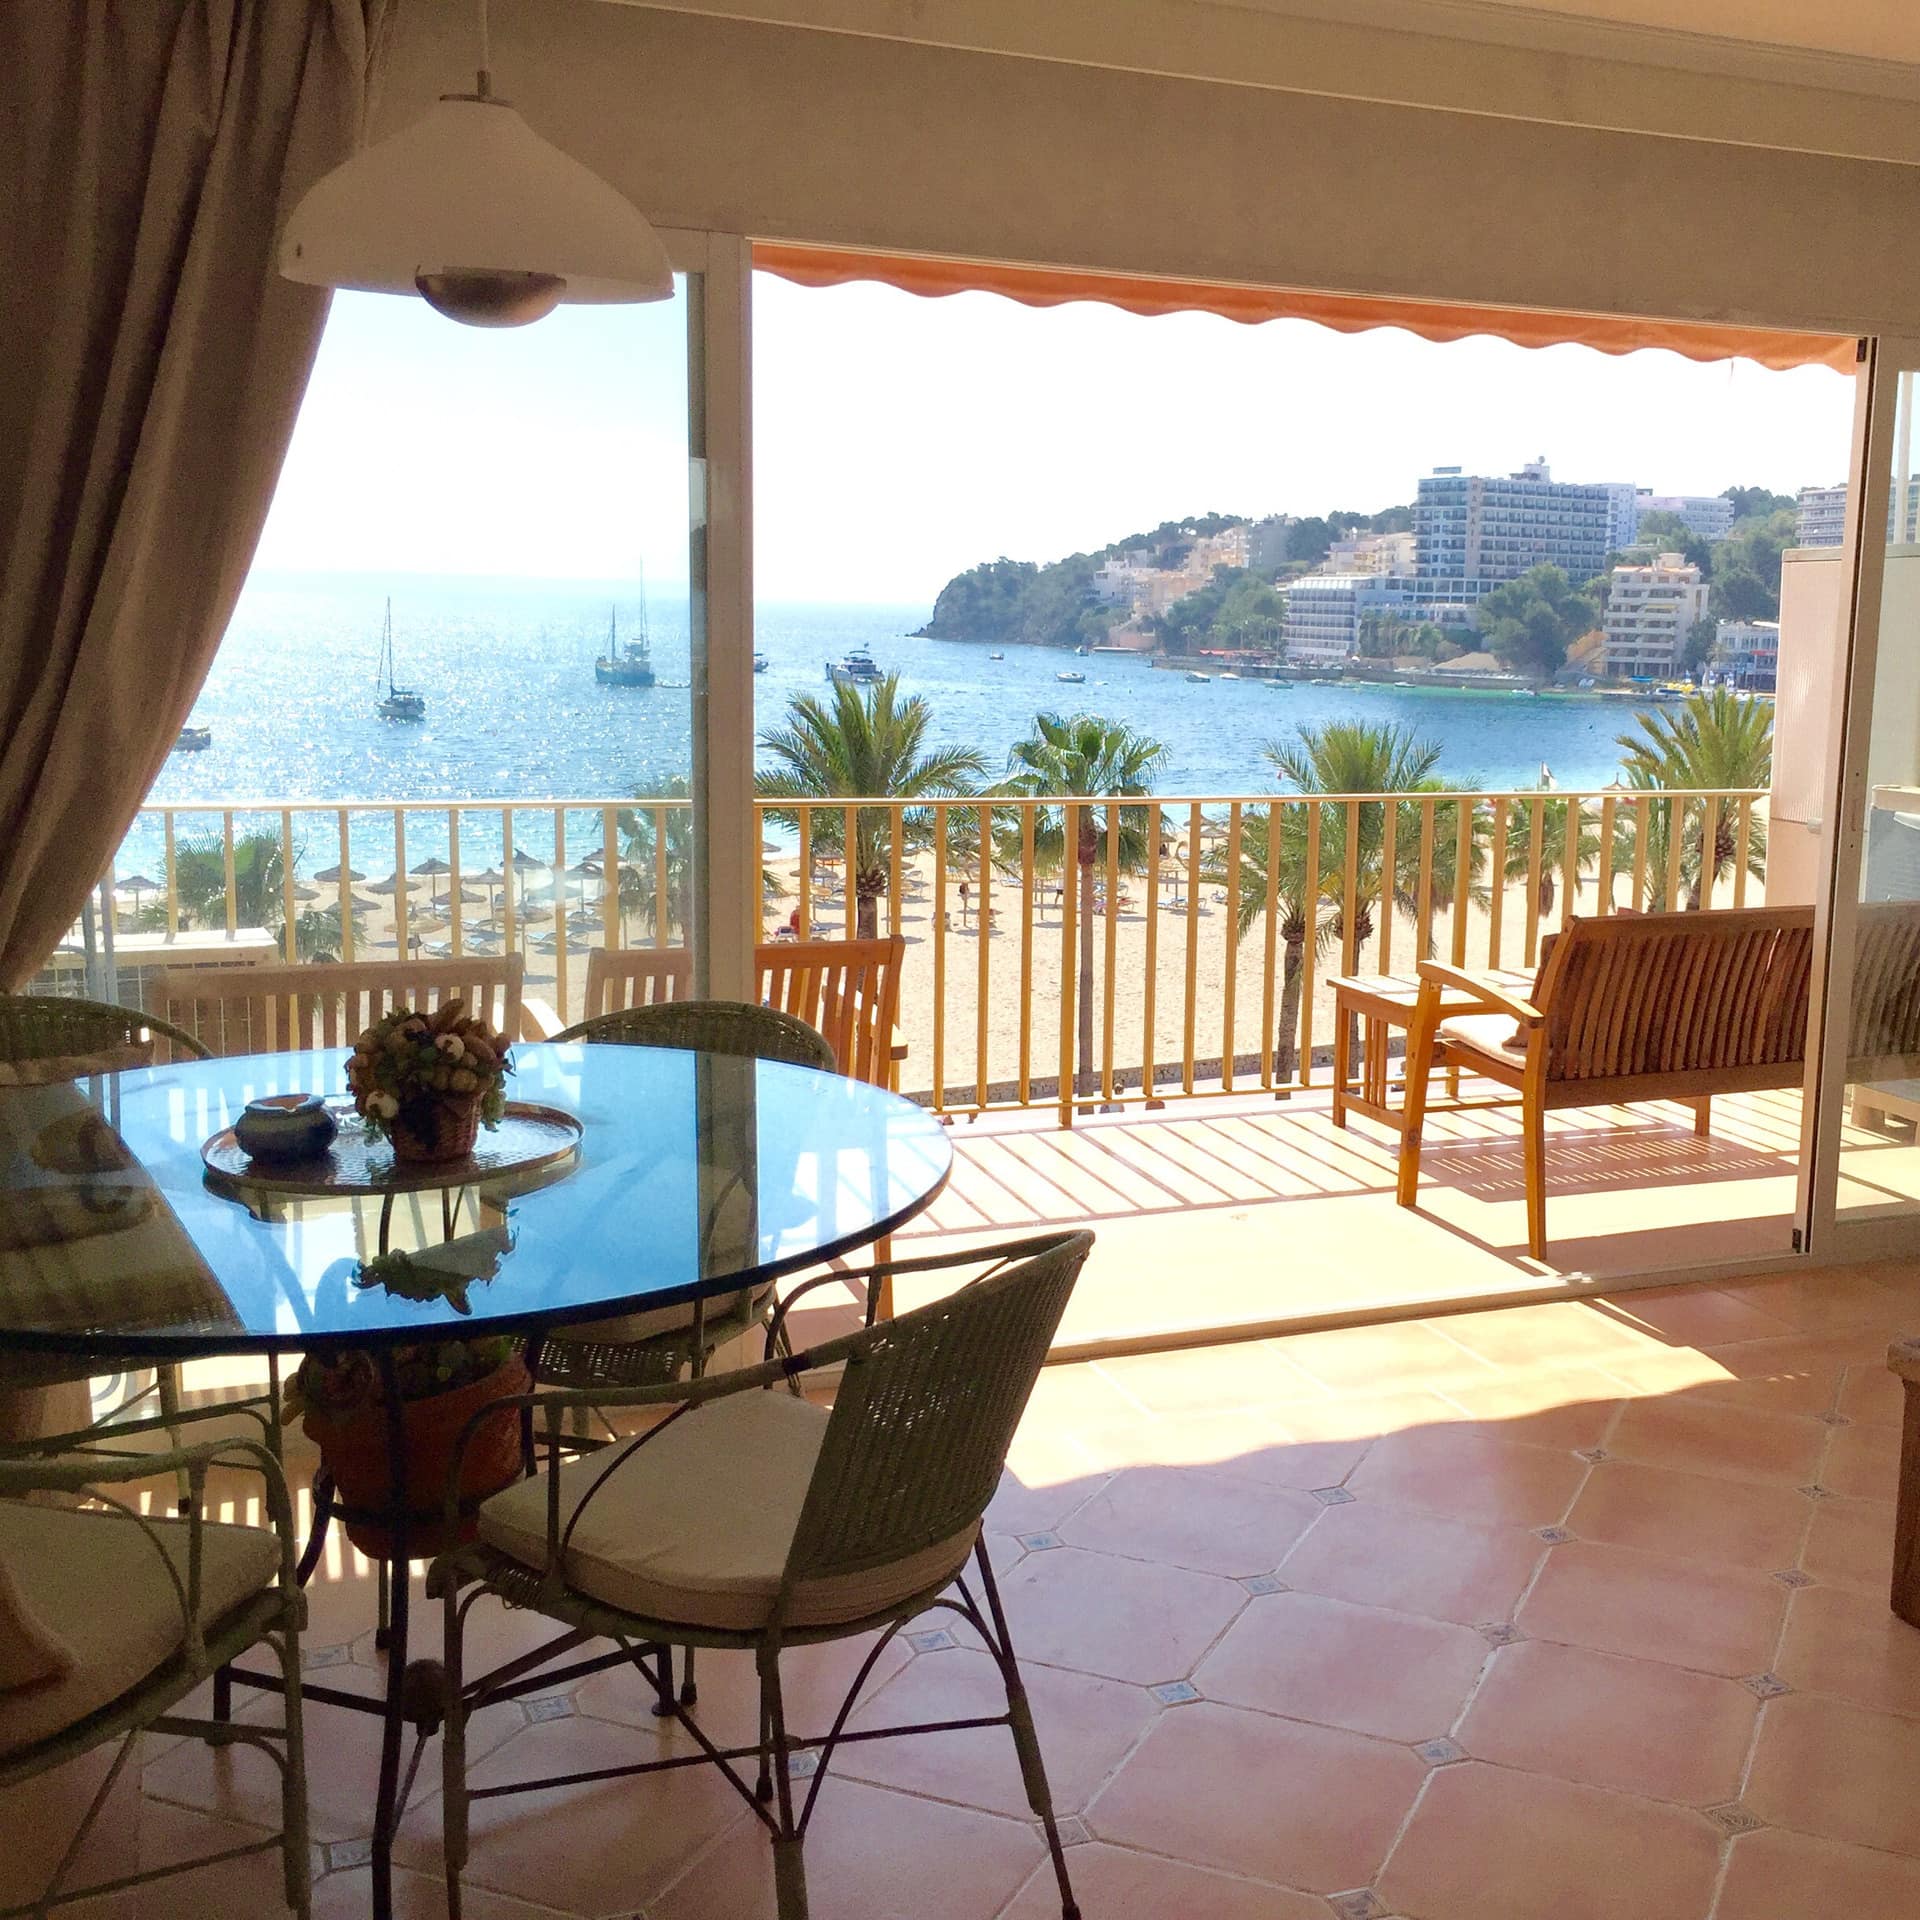 Ferienwohnung auf Mallorca mit großem Wohnraum und Balkon mit Meerblick, darauf Szühle und kleine Tische